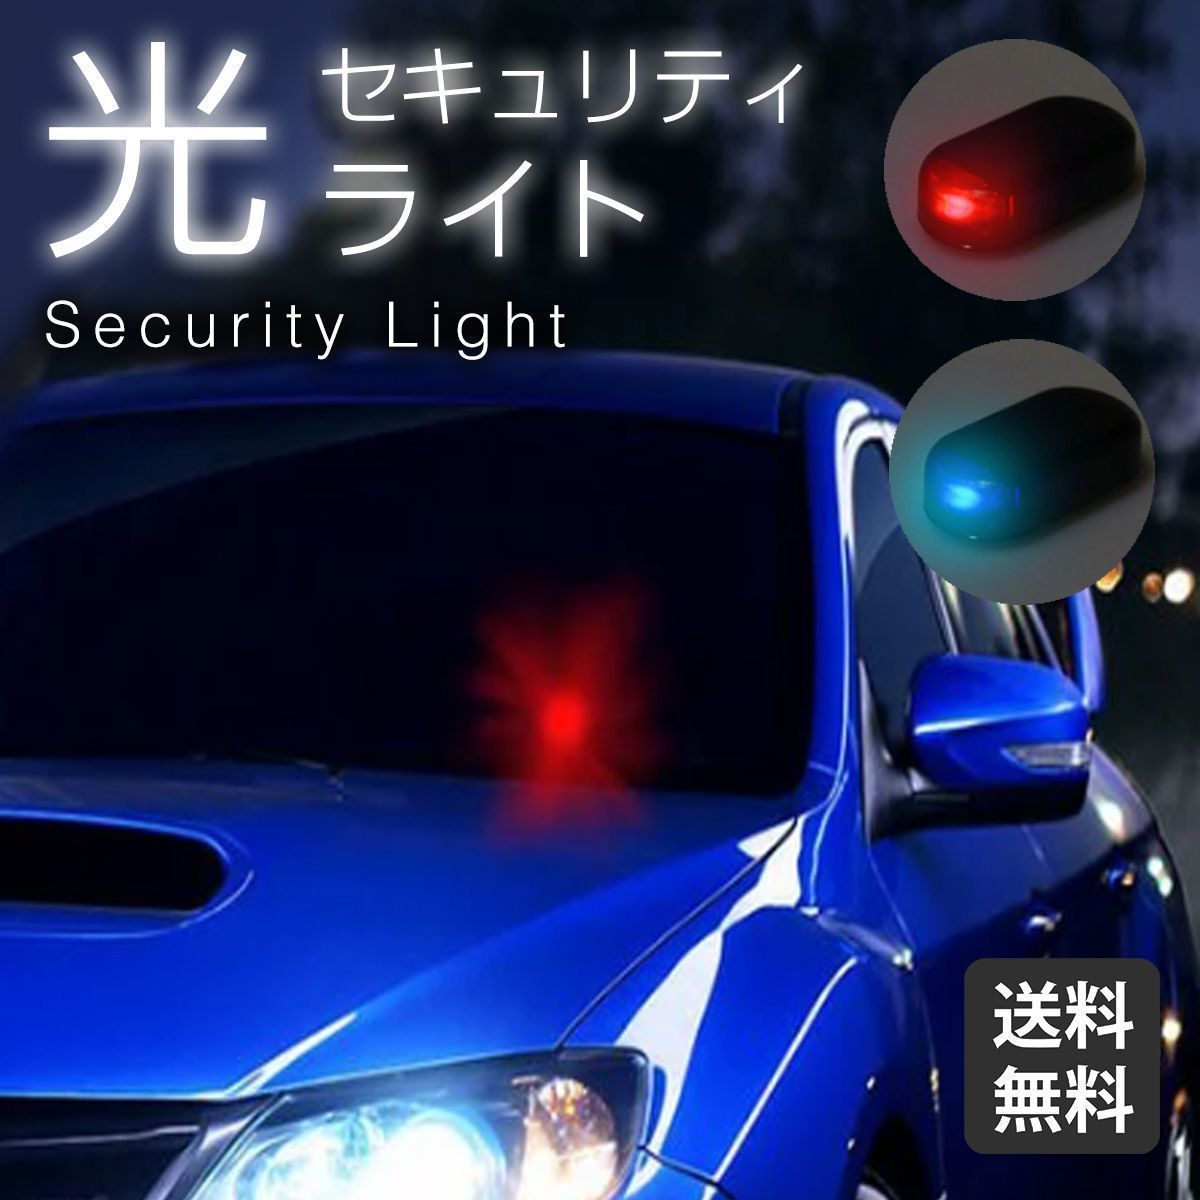 セキュリティライト ダミー 赤 LED カー用品 車 センサー 防犯 盗難防止 セキュリティ